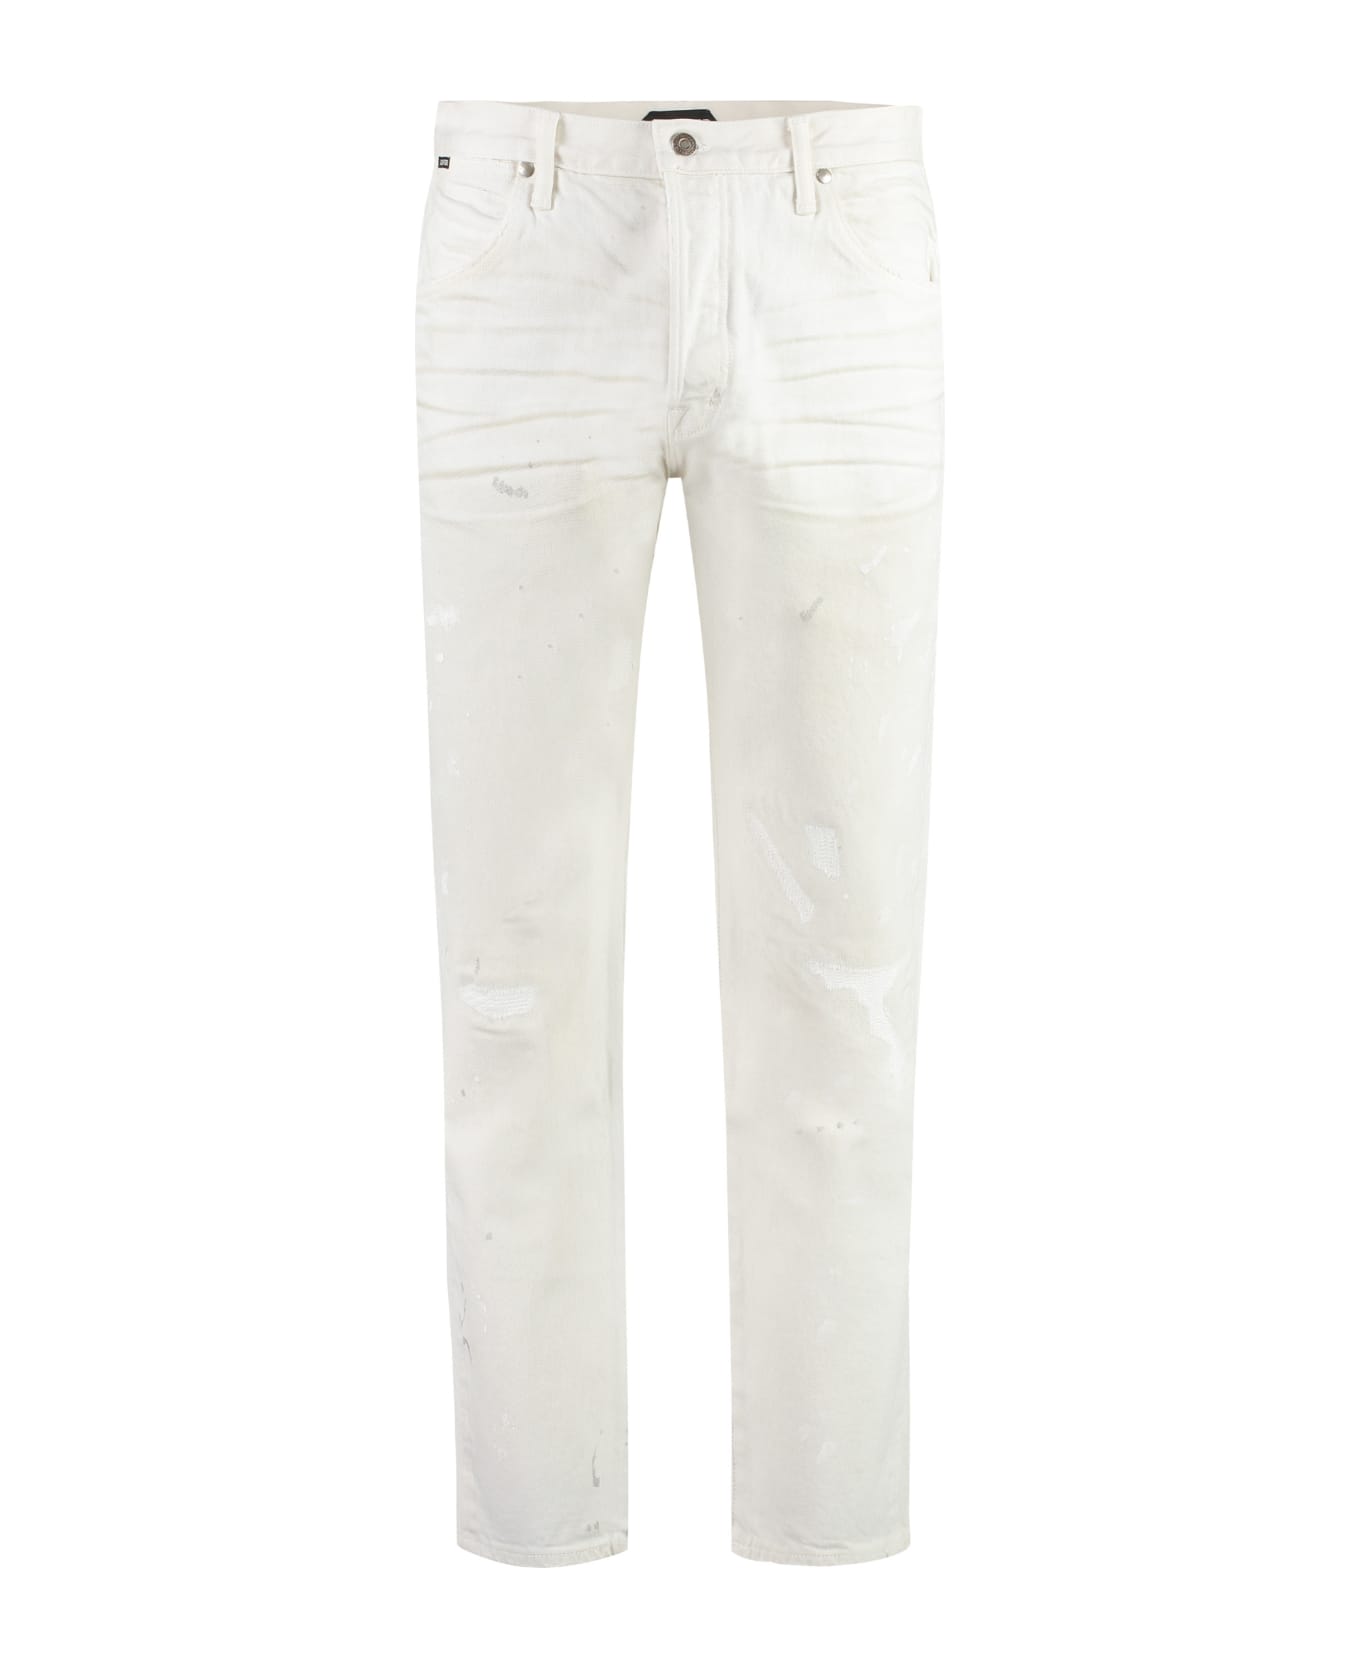 Tom Ford 5-pocket Straight-leg Jeans - White デニム